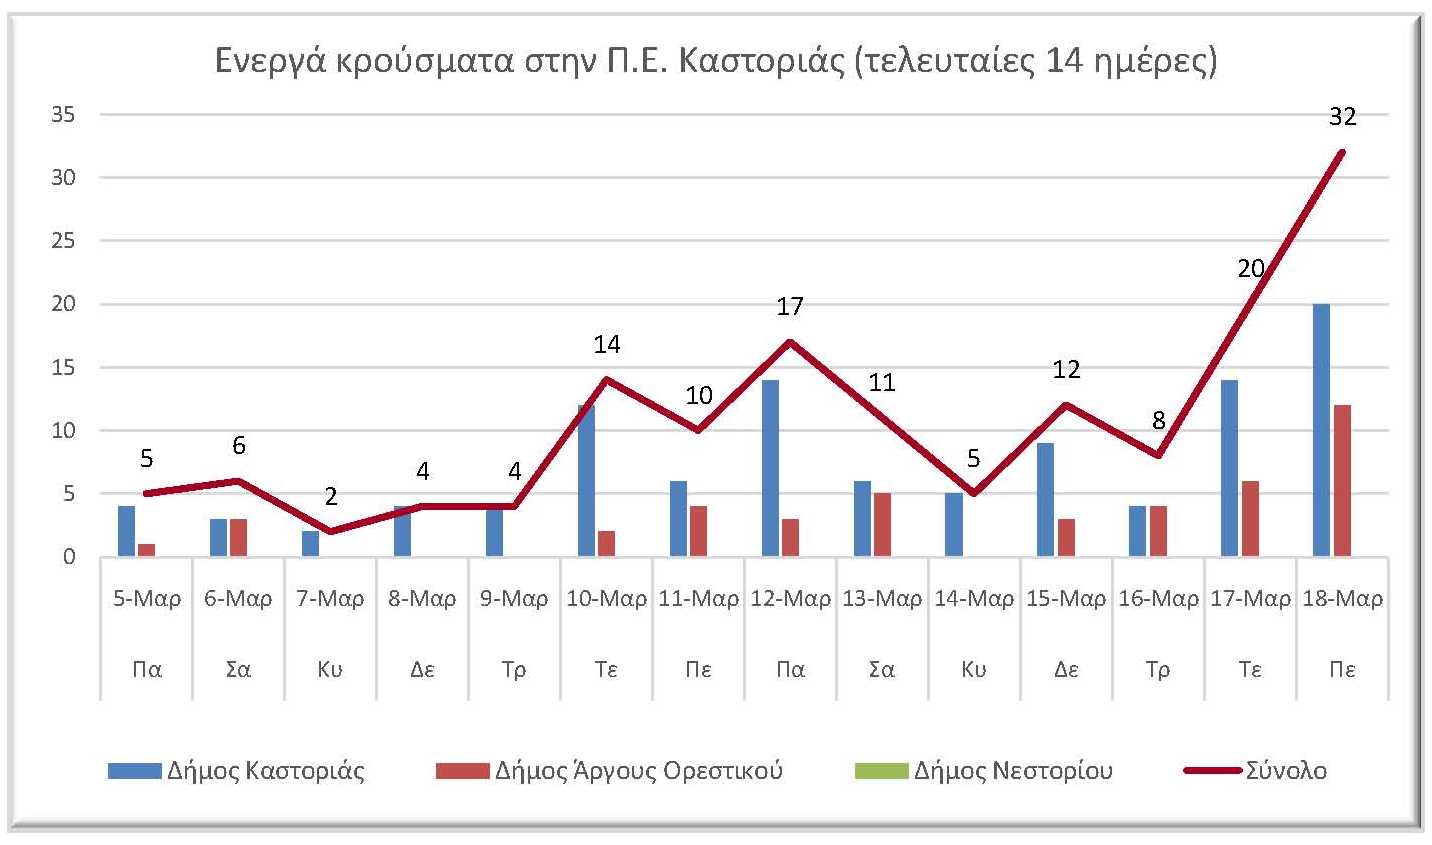 Ο αριθμός των ενεργών κρουσμάτων της Περιφερειακής Ενότητας Καστοριάς, από τις 5-3-2021 έως 18-3-2021